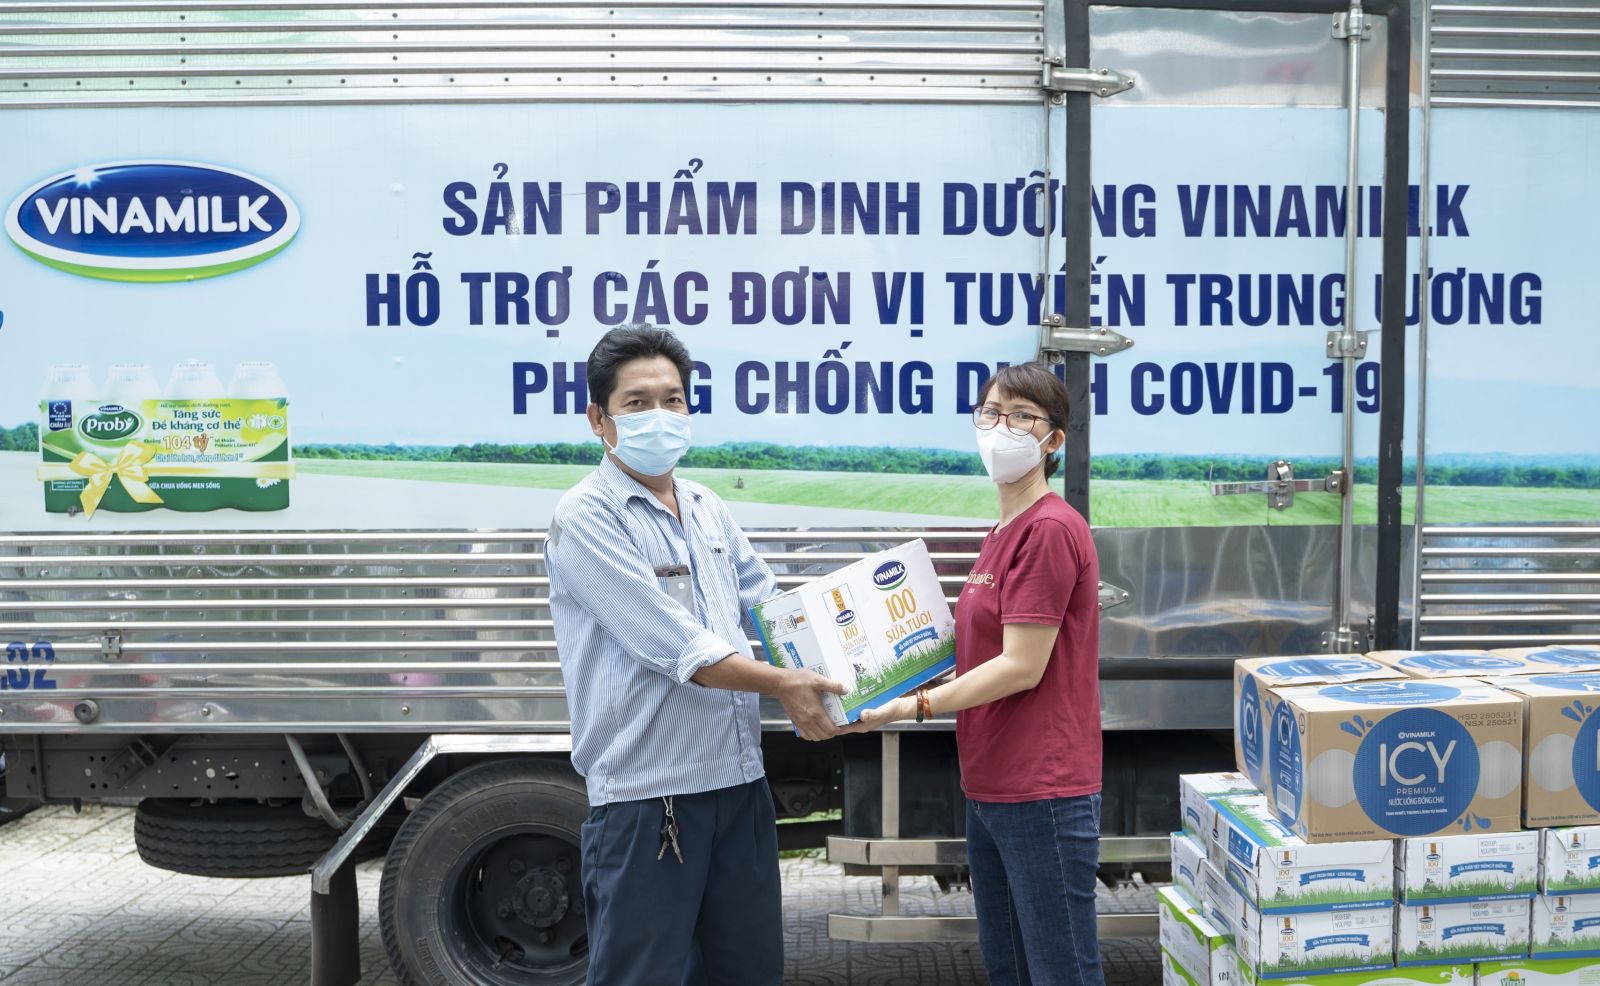 Đại diện Trung tâm Y tế quận Gò Vấp (bên phải) đại diện nhận các sản phẩm và sẽ nhanh chóng chuyển đến các y bác sĩ, nhân viên y tế đang làm nhiệm vụ